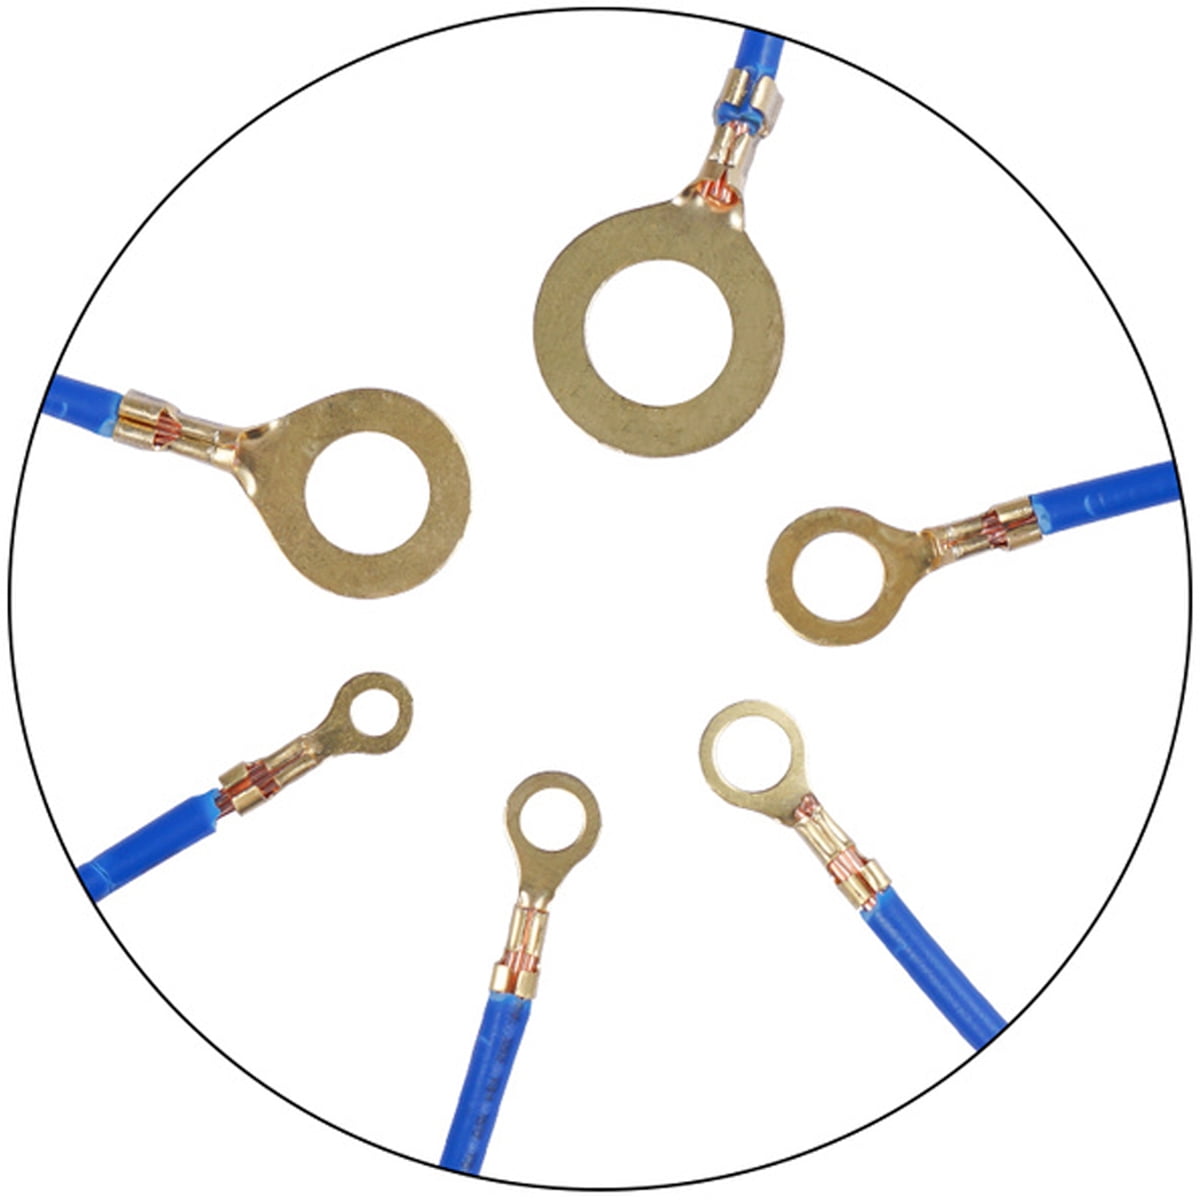 Open Barrel Copper Ring Lug Terminals Wire Crimp Connector Assortment Kit  Ot 10a 20a 30a 40a 50a (p | Fruugo NO